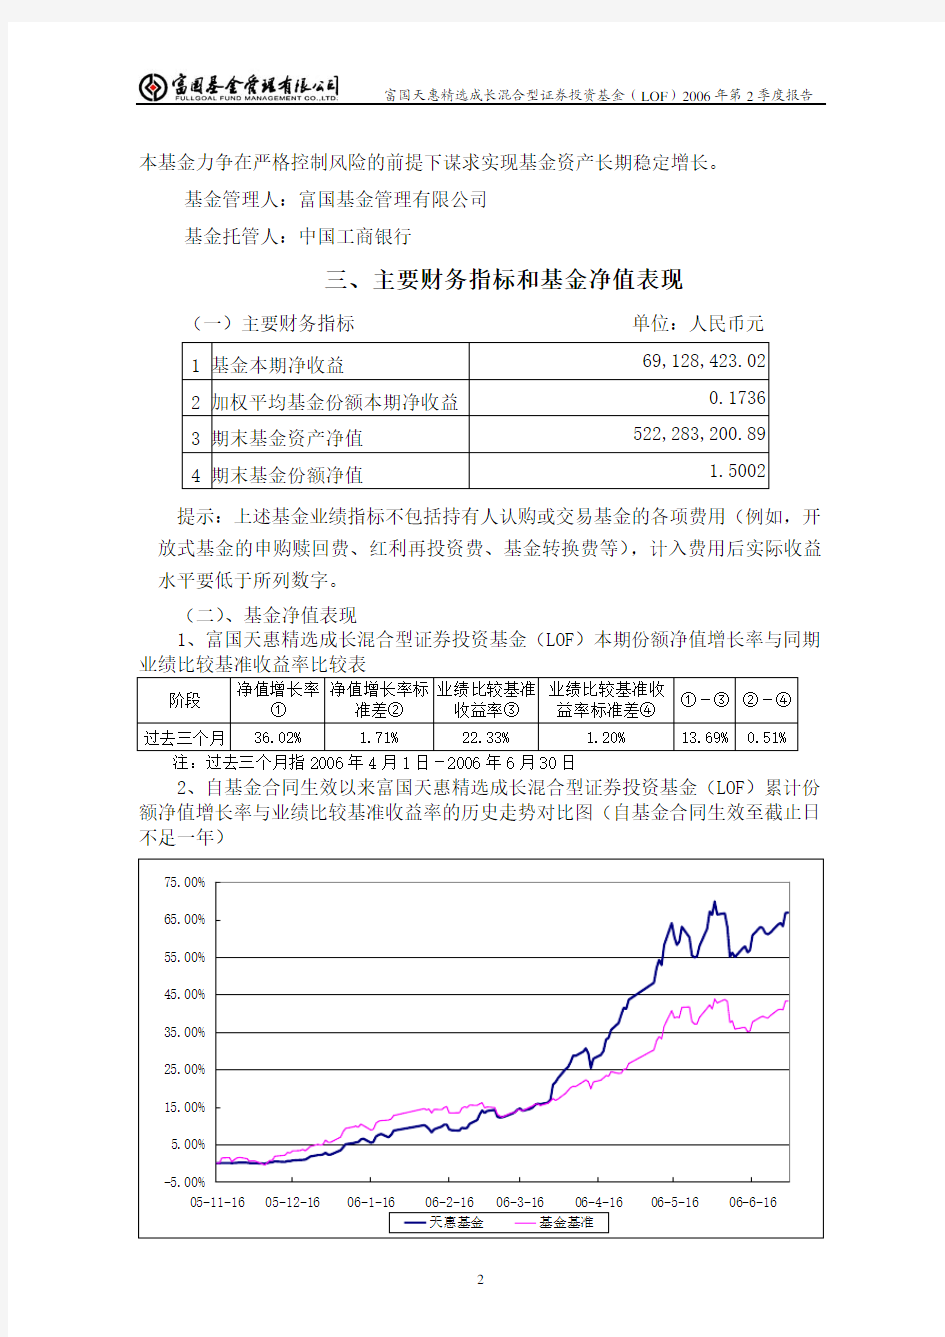 富国天惠精选成长混合型证券投资基金(LOF)2006